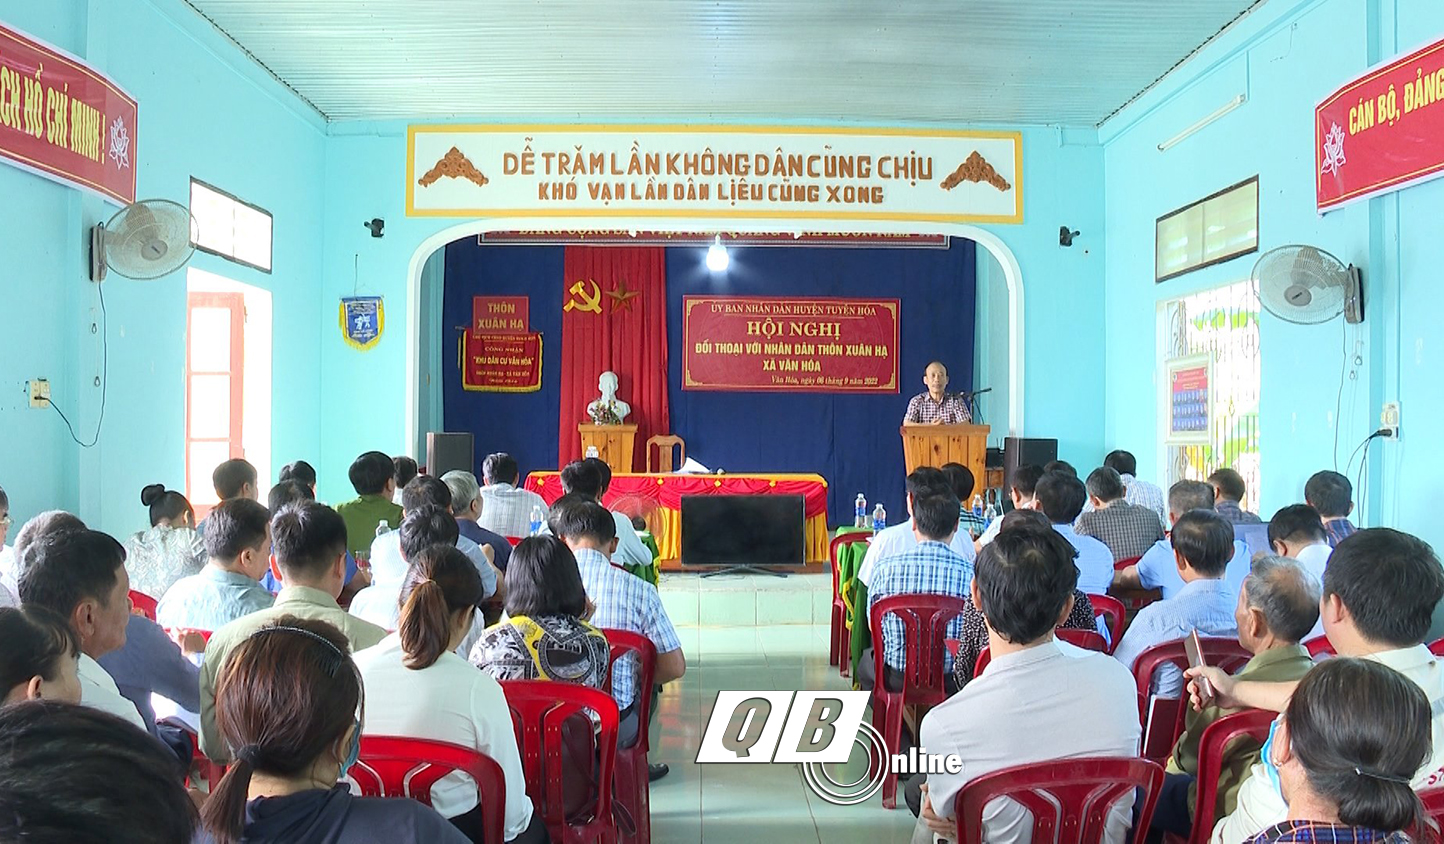 Lãnh đạo huyện Tuyên Hóa đối thoại với nhân dân thôn Xuân Hạ, xã Văn Hóa.